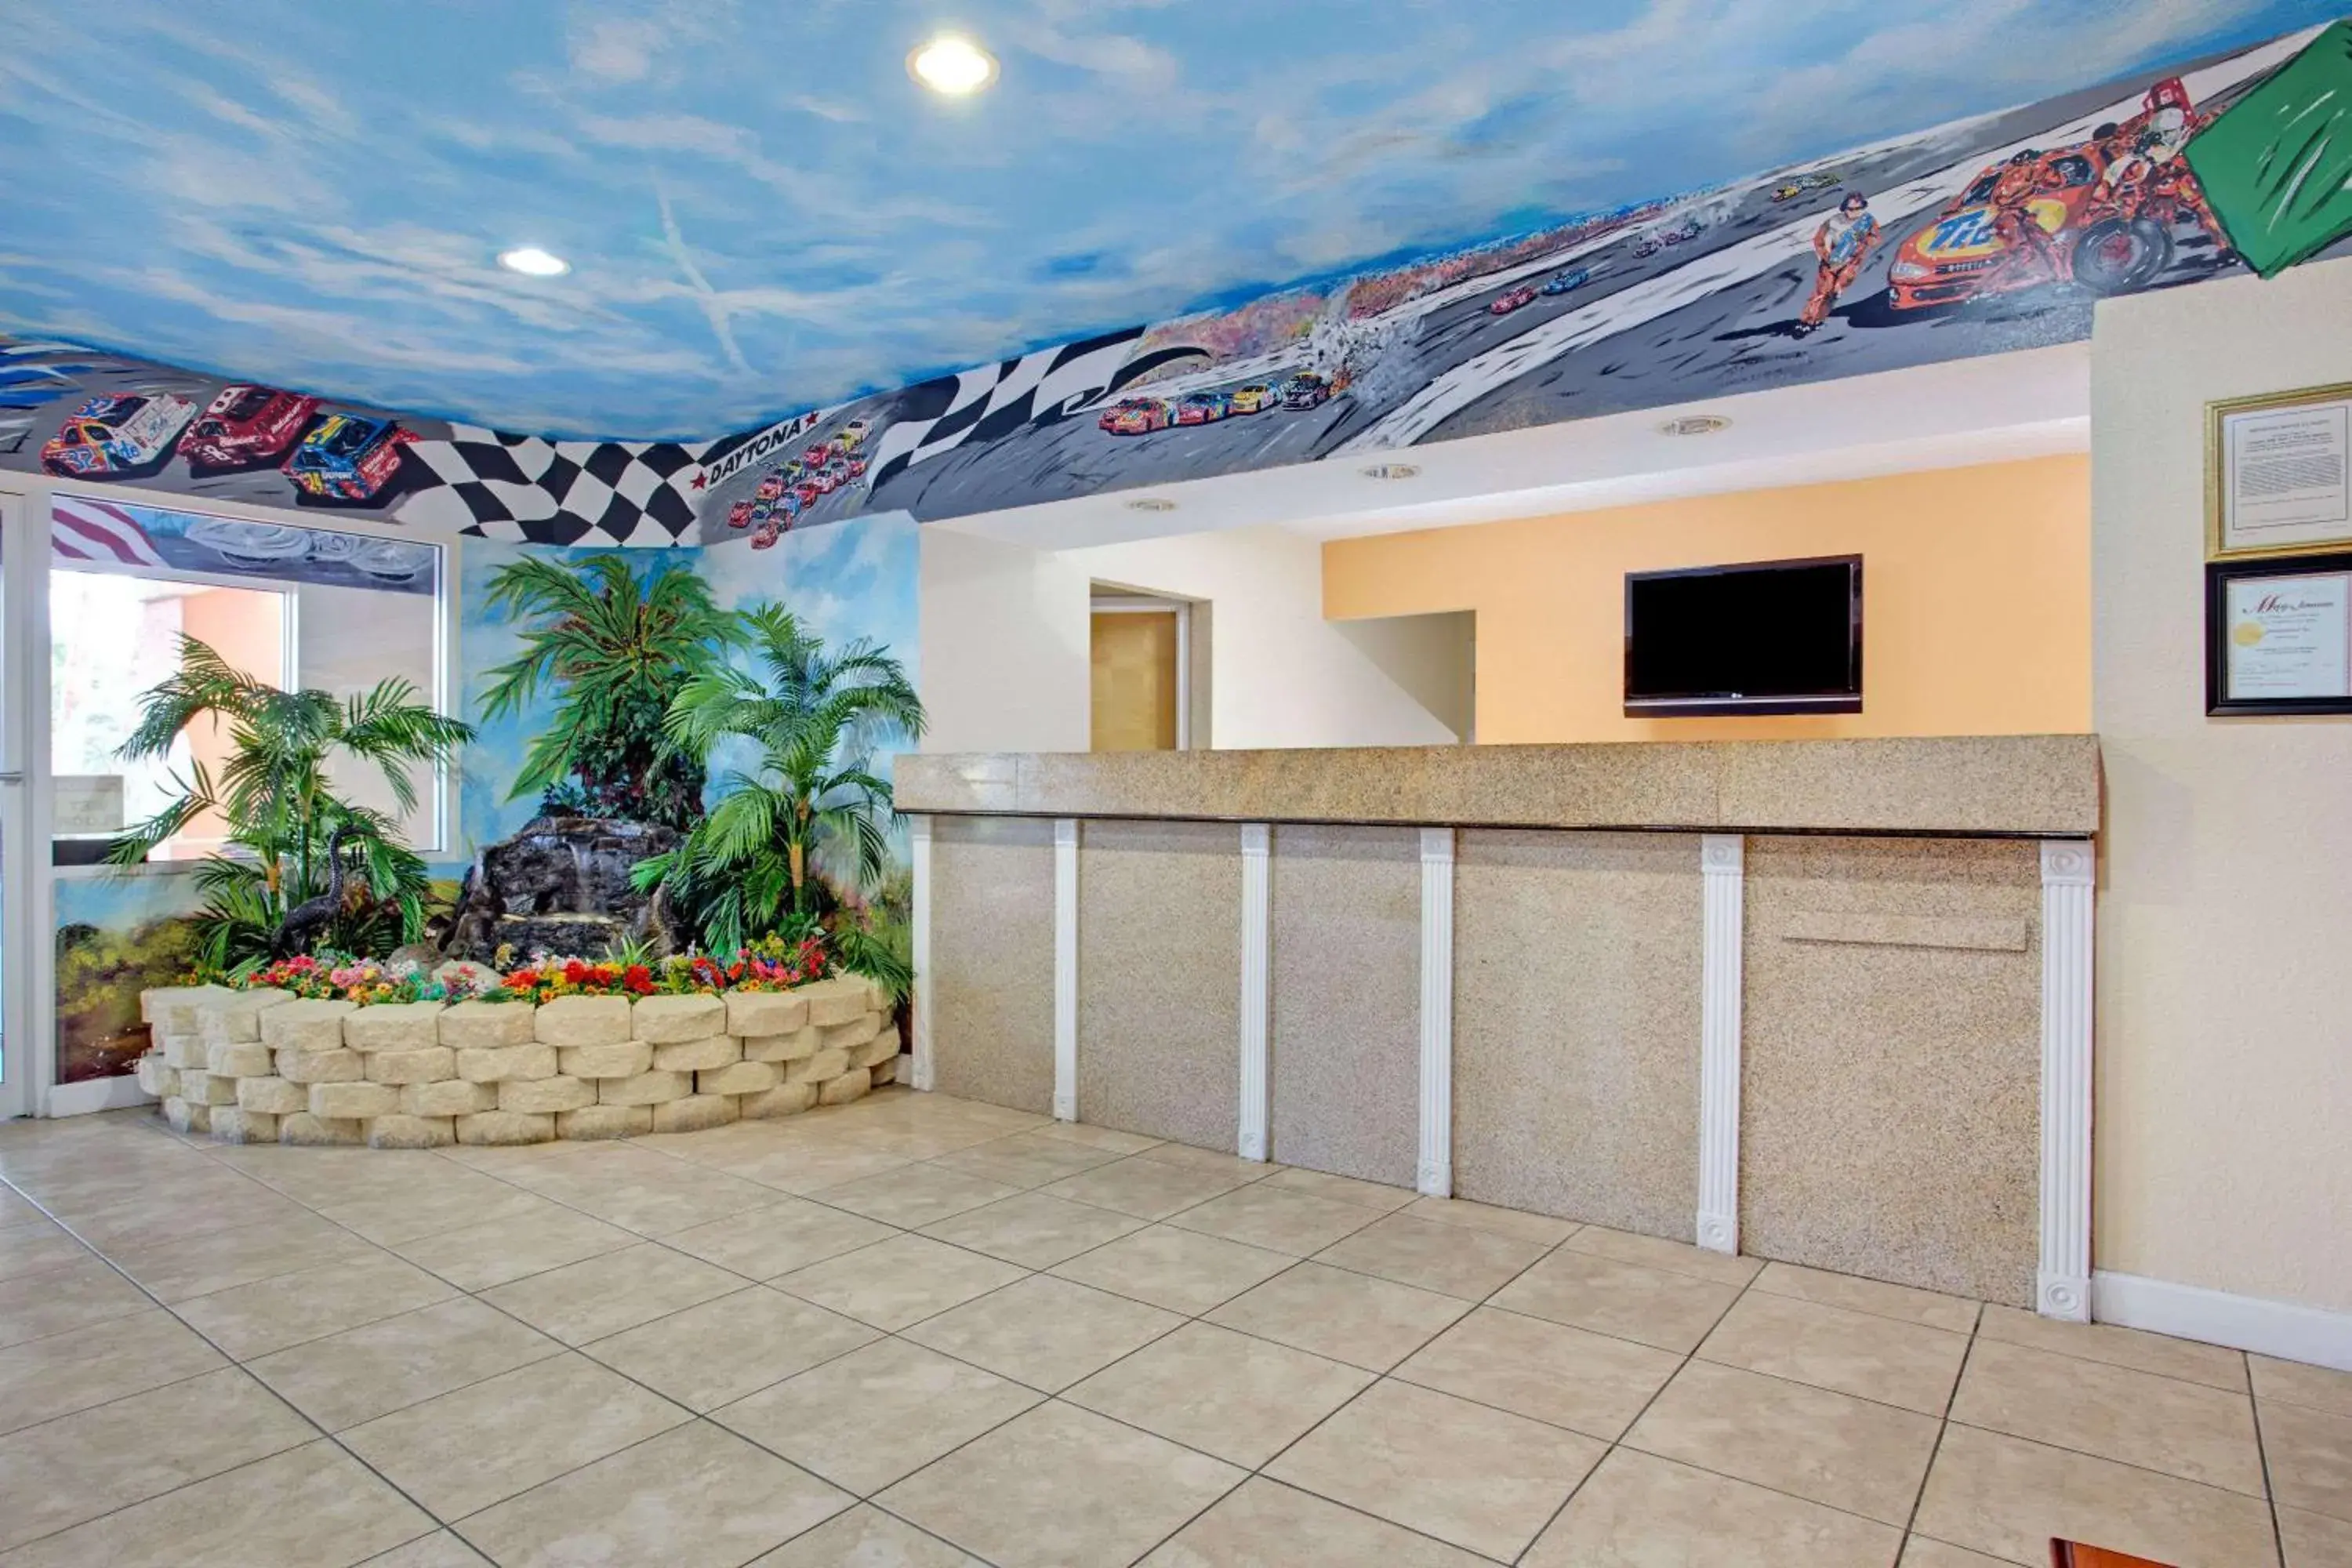 Lobby or reception, Lobby/Reception in Super 8 by Wyndham Daytona Beach